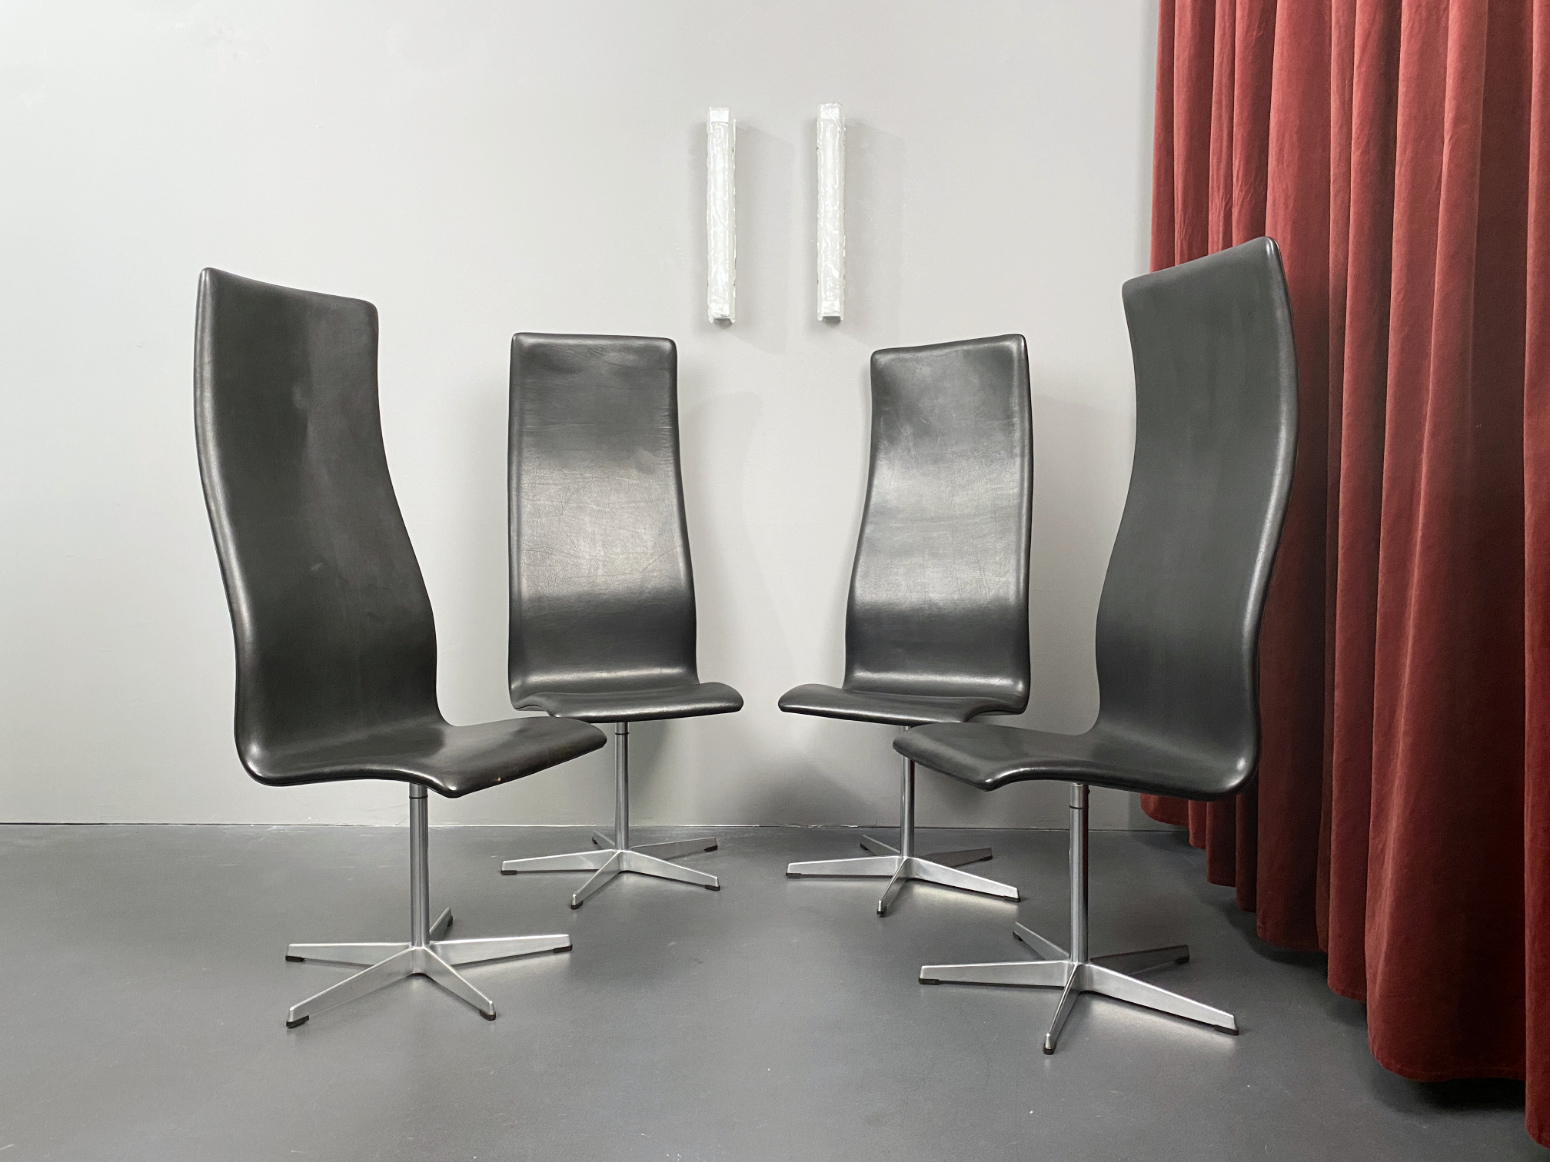 Set of 4 Oxford High-Back Swivel Chairs, Model 3162, black Leather, by Arne Jacobsen for Fritz Hansen, Denmark, 1960s